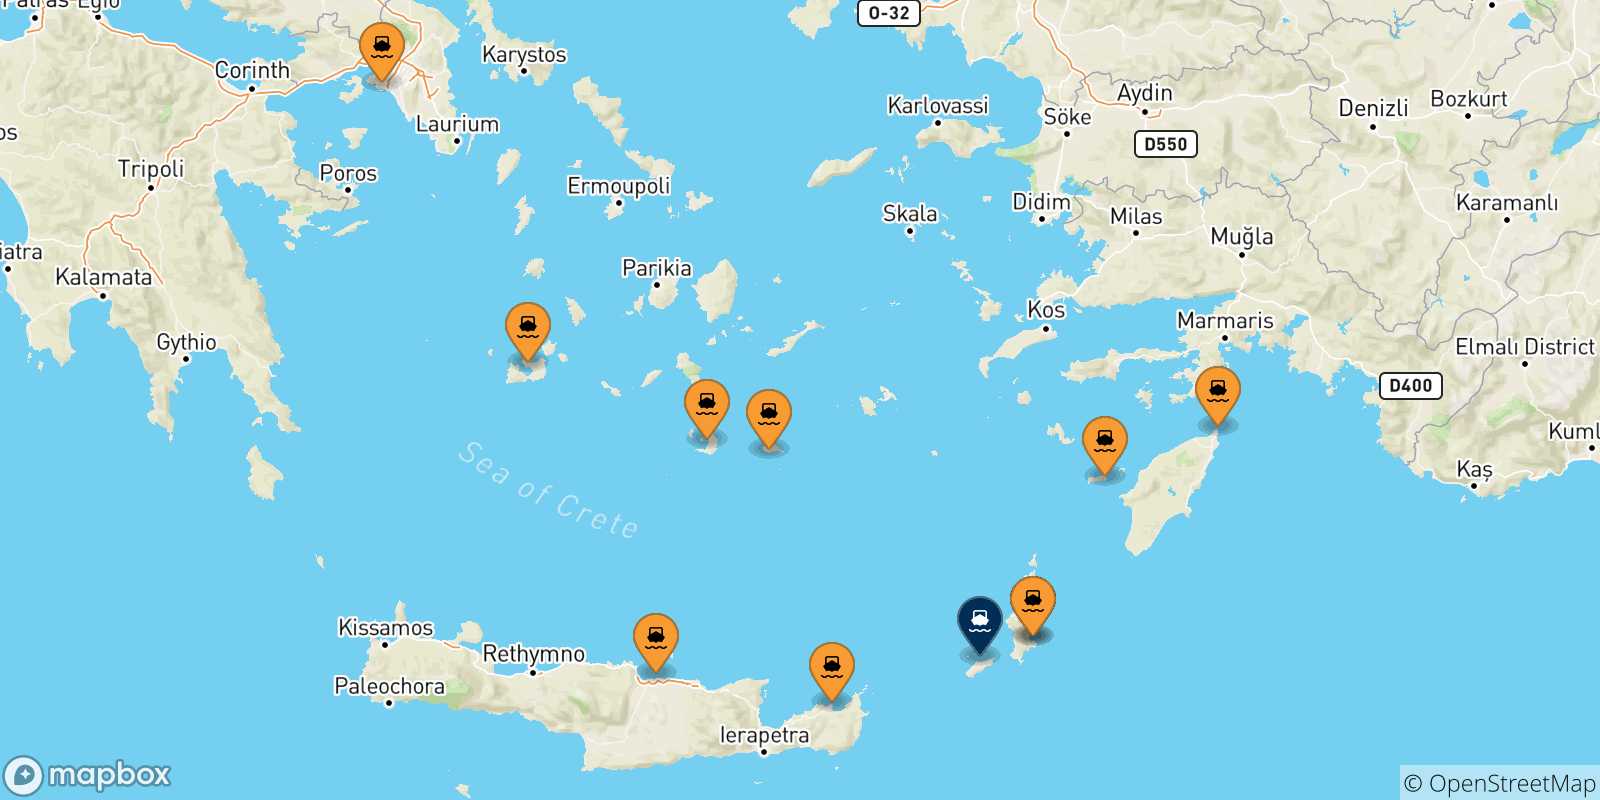 Mappa delle possibili rotte tra la Grecia e Kasos